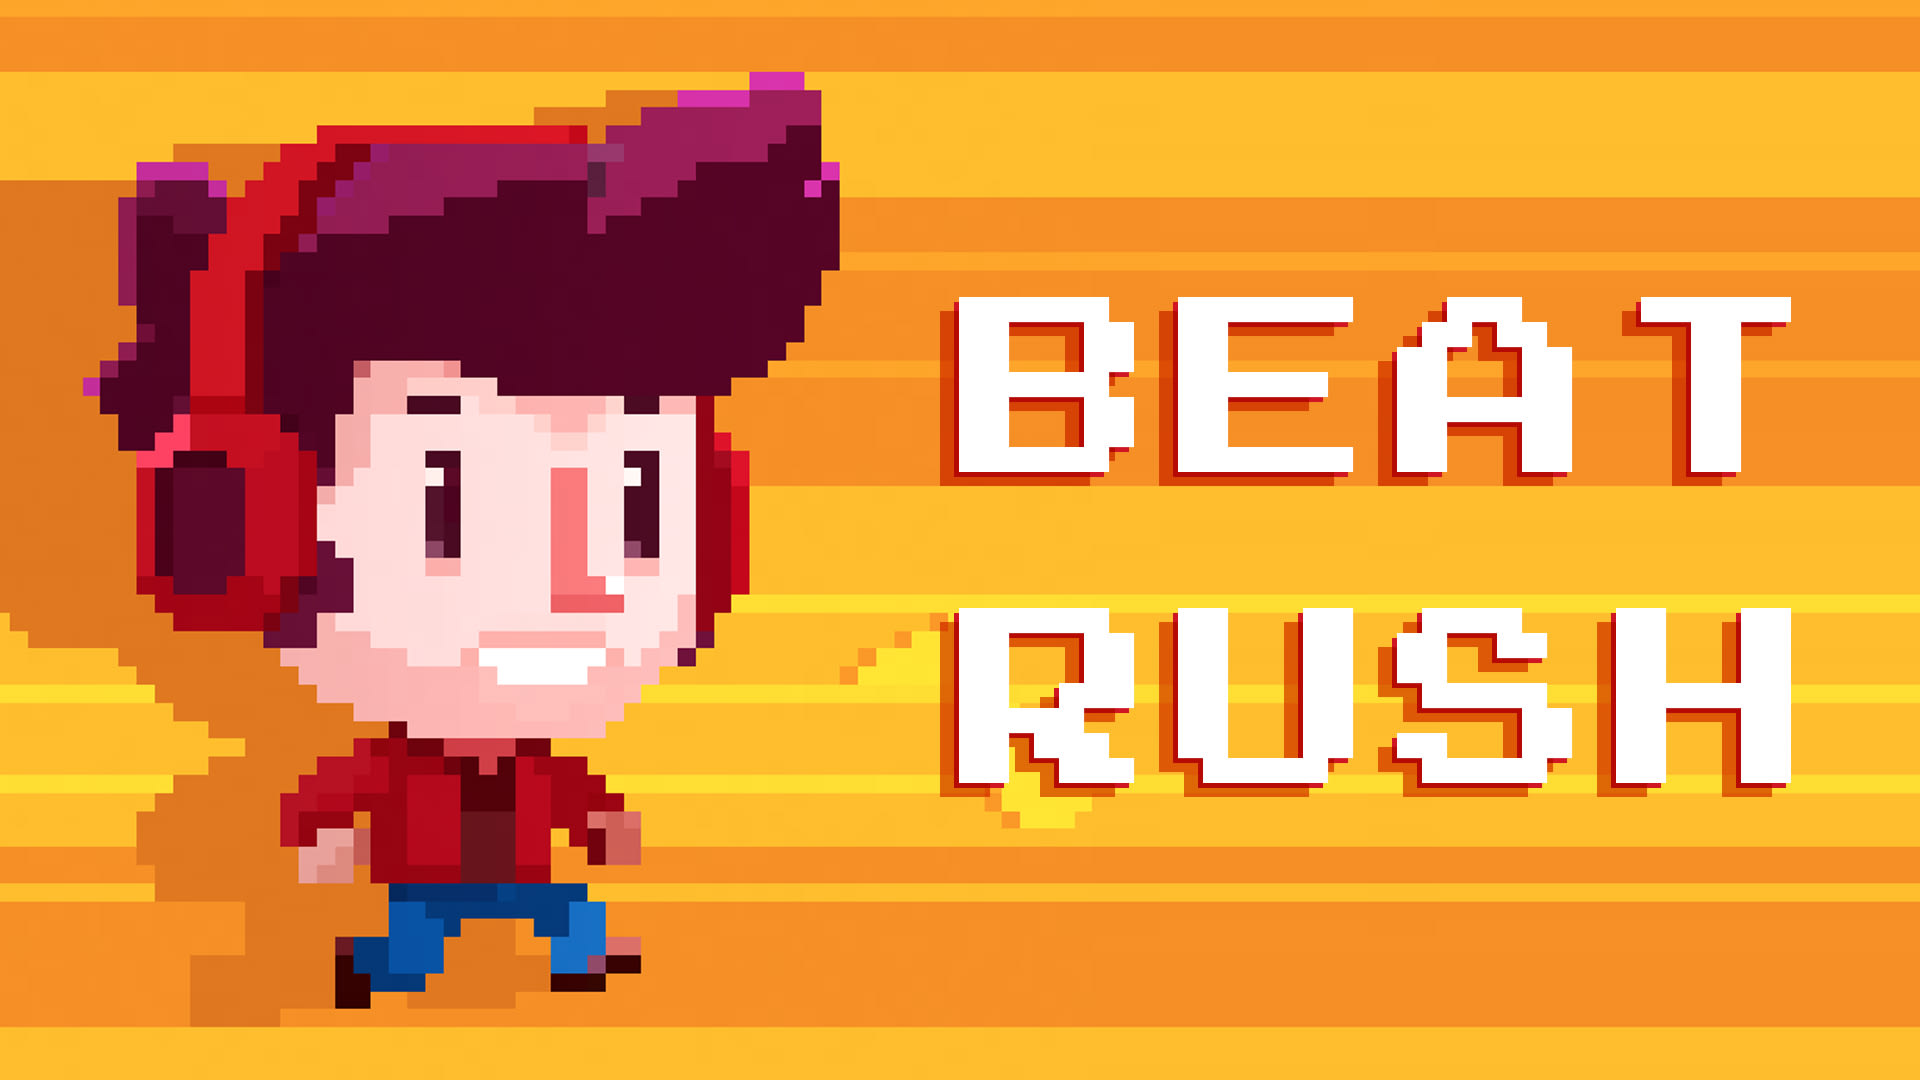 Beat Rush